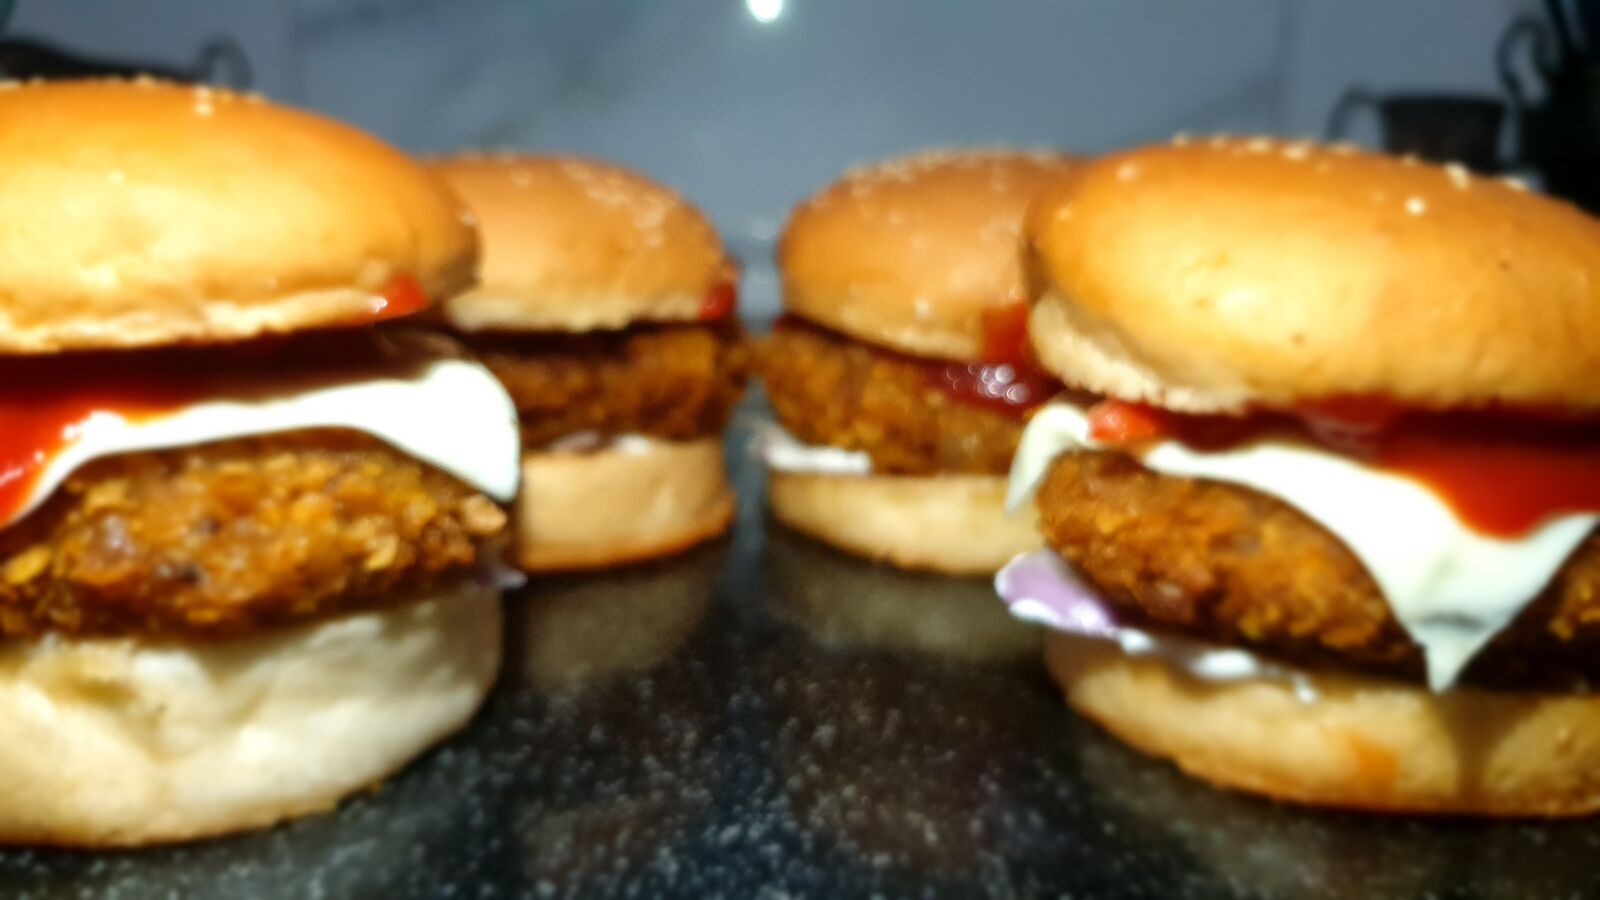 Samsung Galaxy S9 sample photo. Burger, cheeseburger, tasty food photography